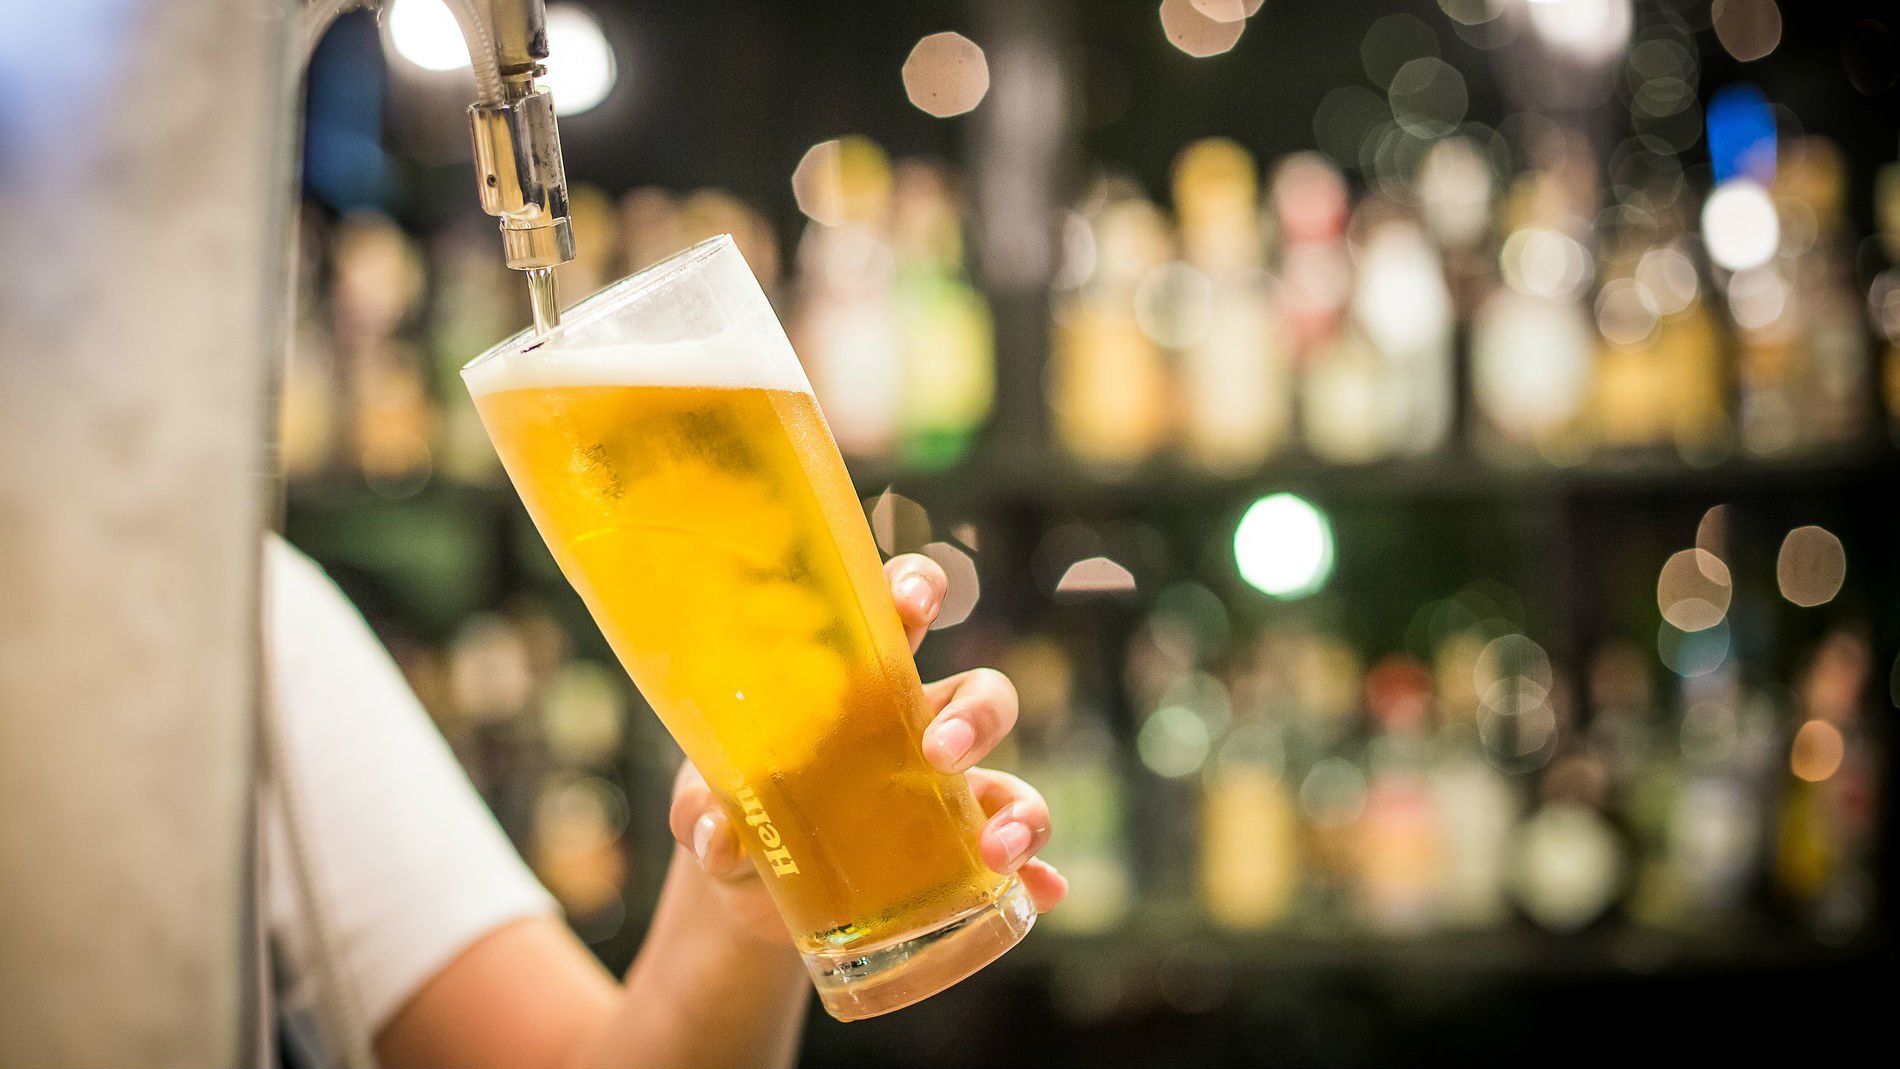 La cerveza supone hasta el 40% de la facturación de los pequeños bares